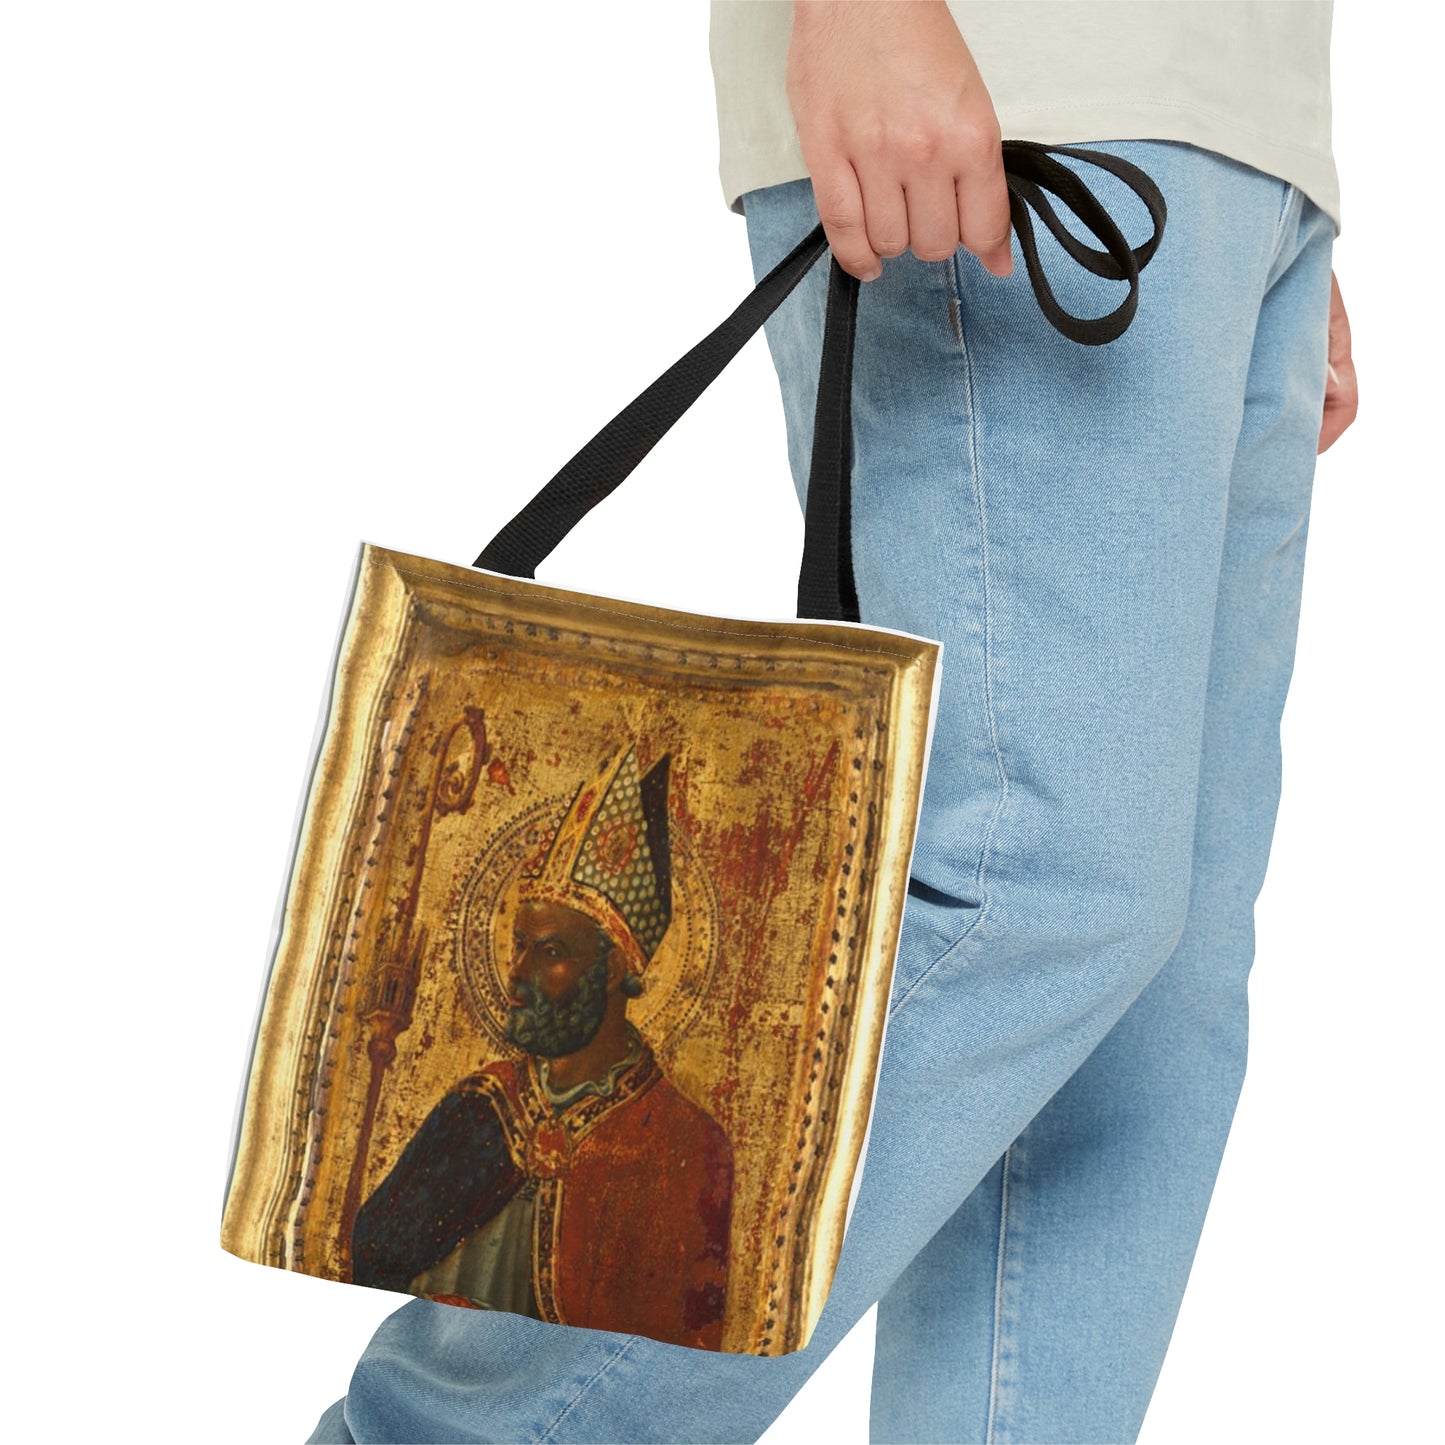 Saint Nicholas-Tote Bag